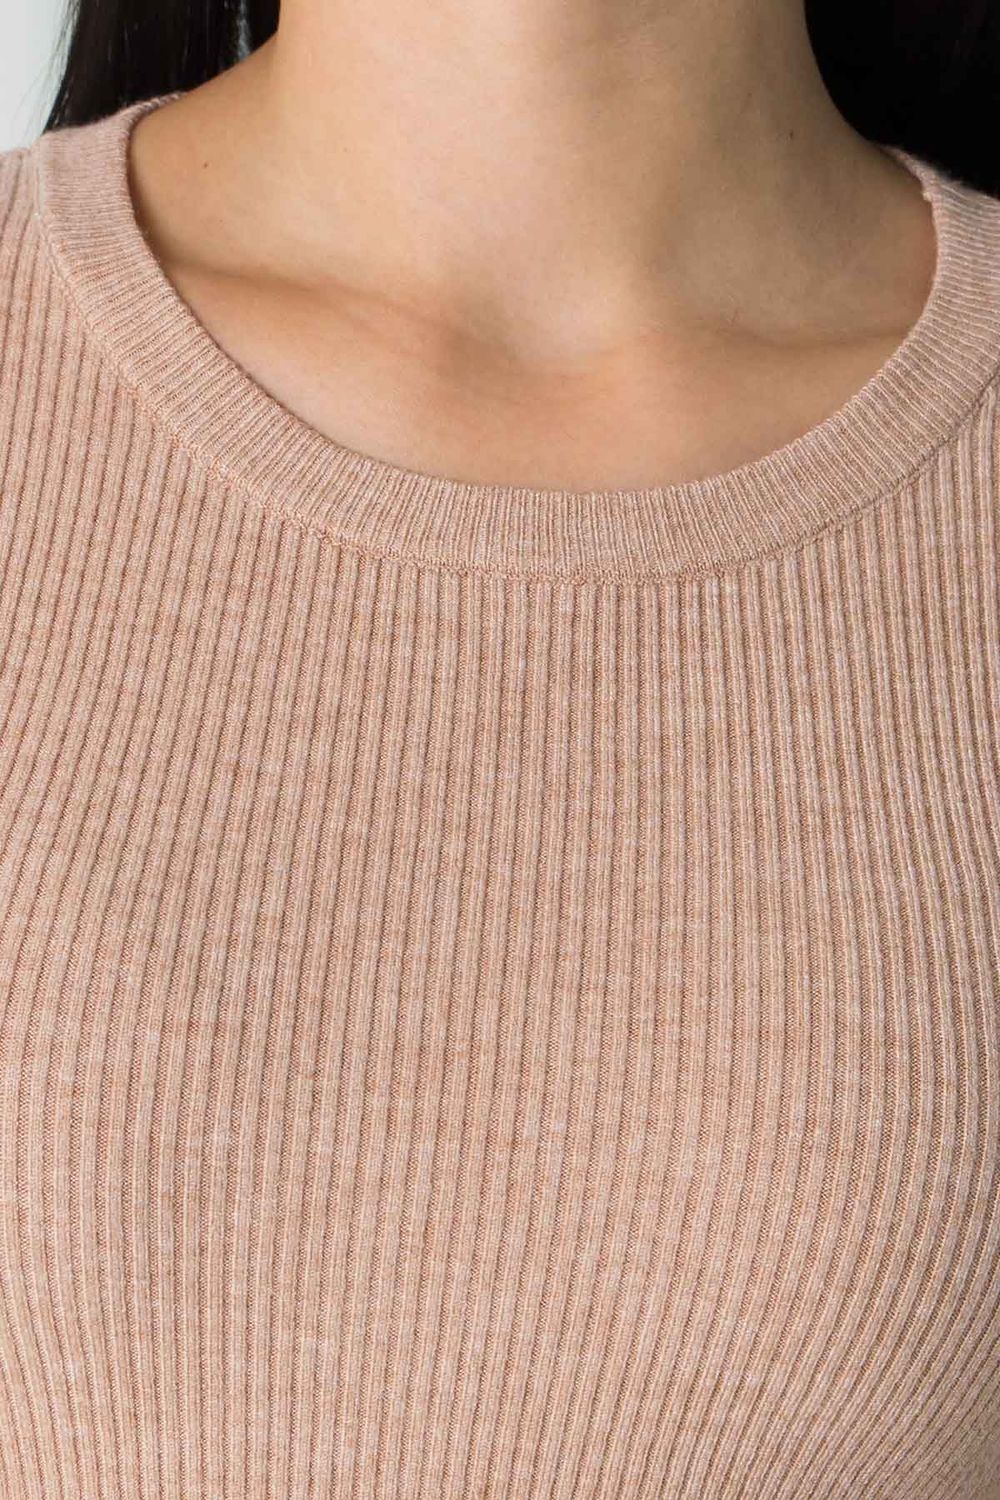 Женская базовая кофточка джемпер бежевого цвета - фото